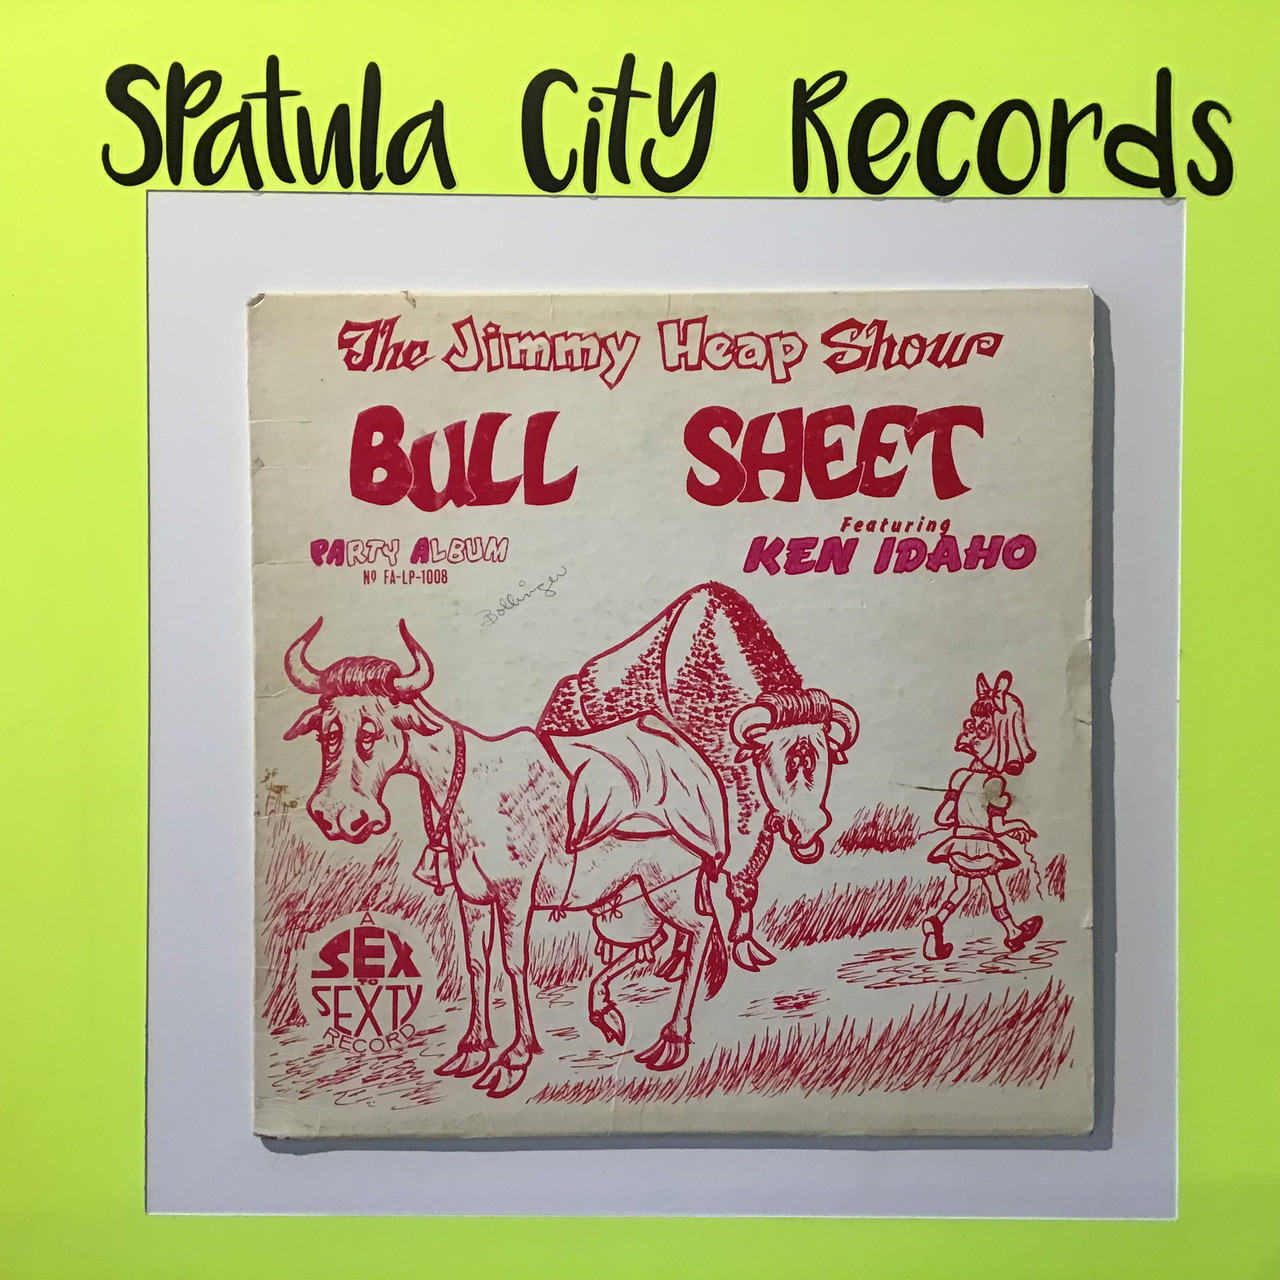 Jimmy Heap Show featuring Ken Idaho - Bull Sheet - vinyl record LP